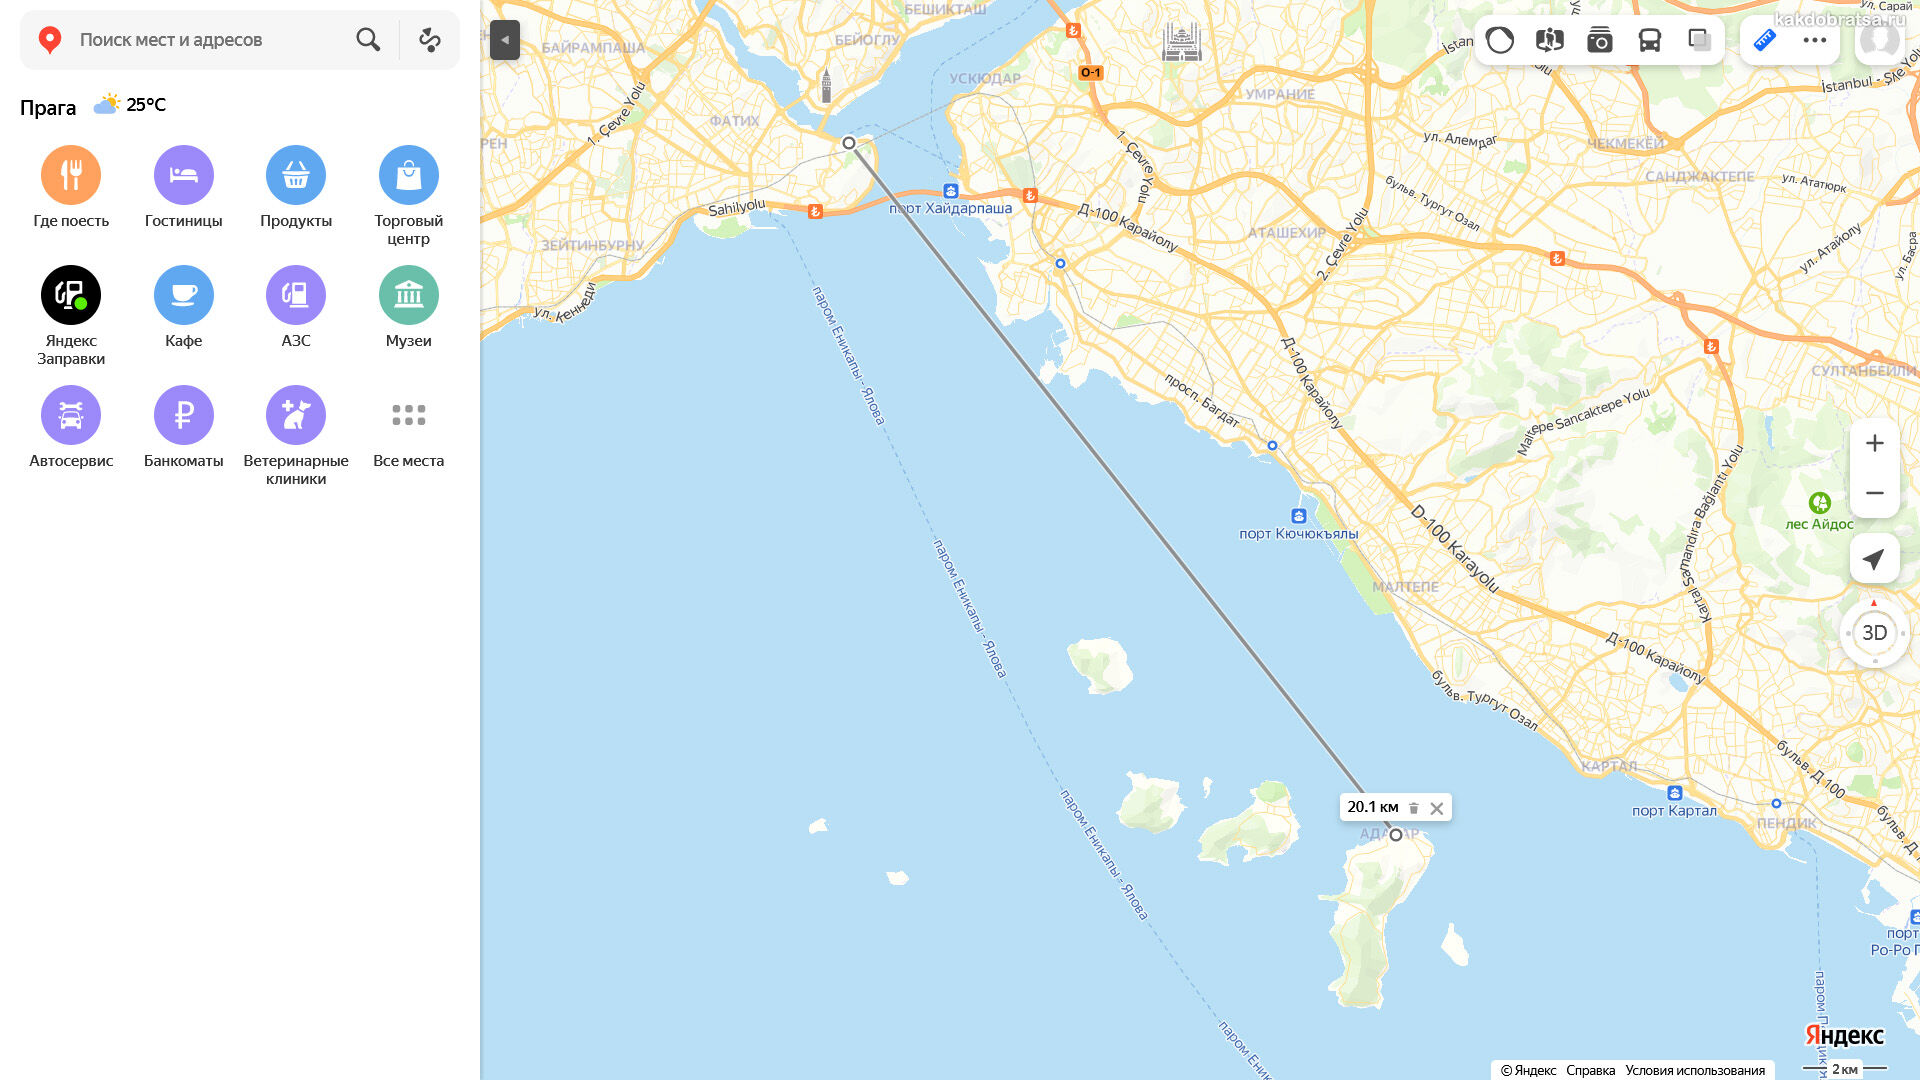 Принцевы острова в стамбуле как добраться. Принцевы острова в Стамбуле на карте. Стамбул остров Принцевы острова. Принцевы острова Турции на карте Турции. Стамбул карта Турции Принцевы острова.